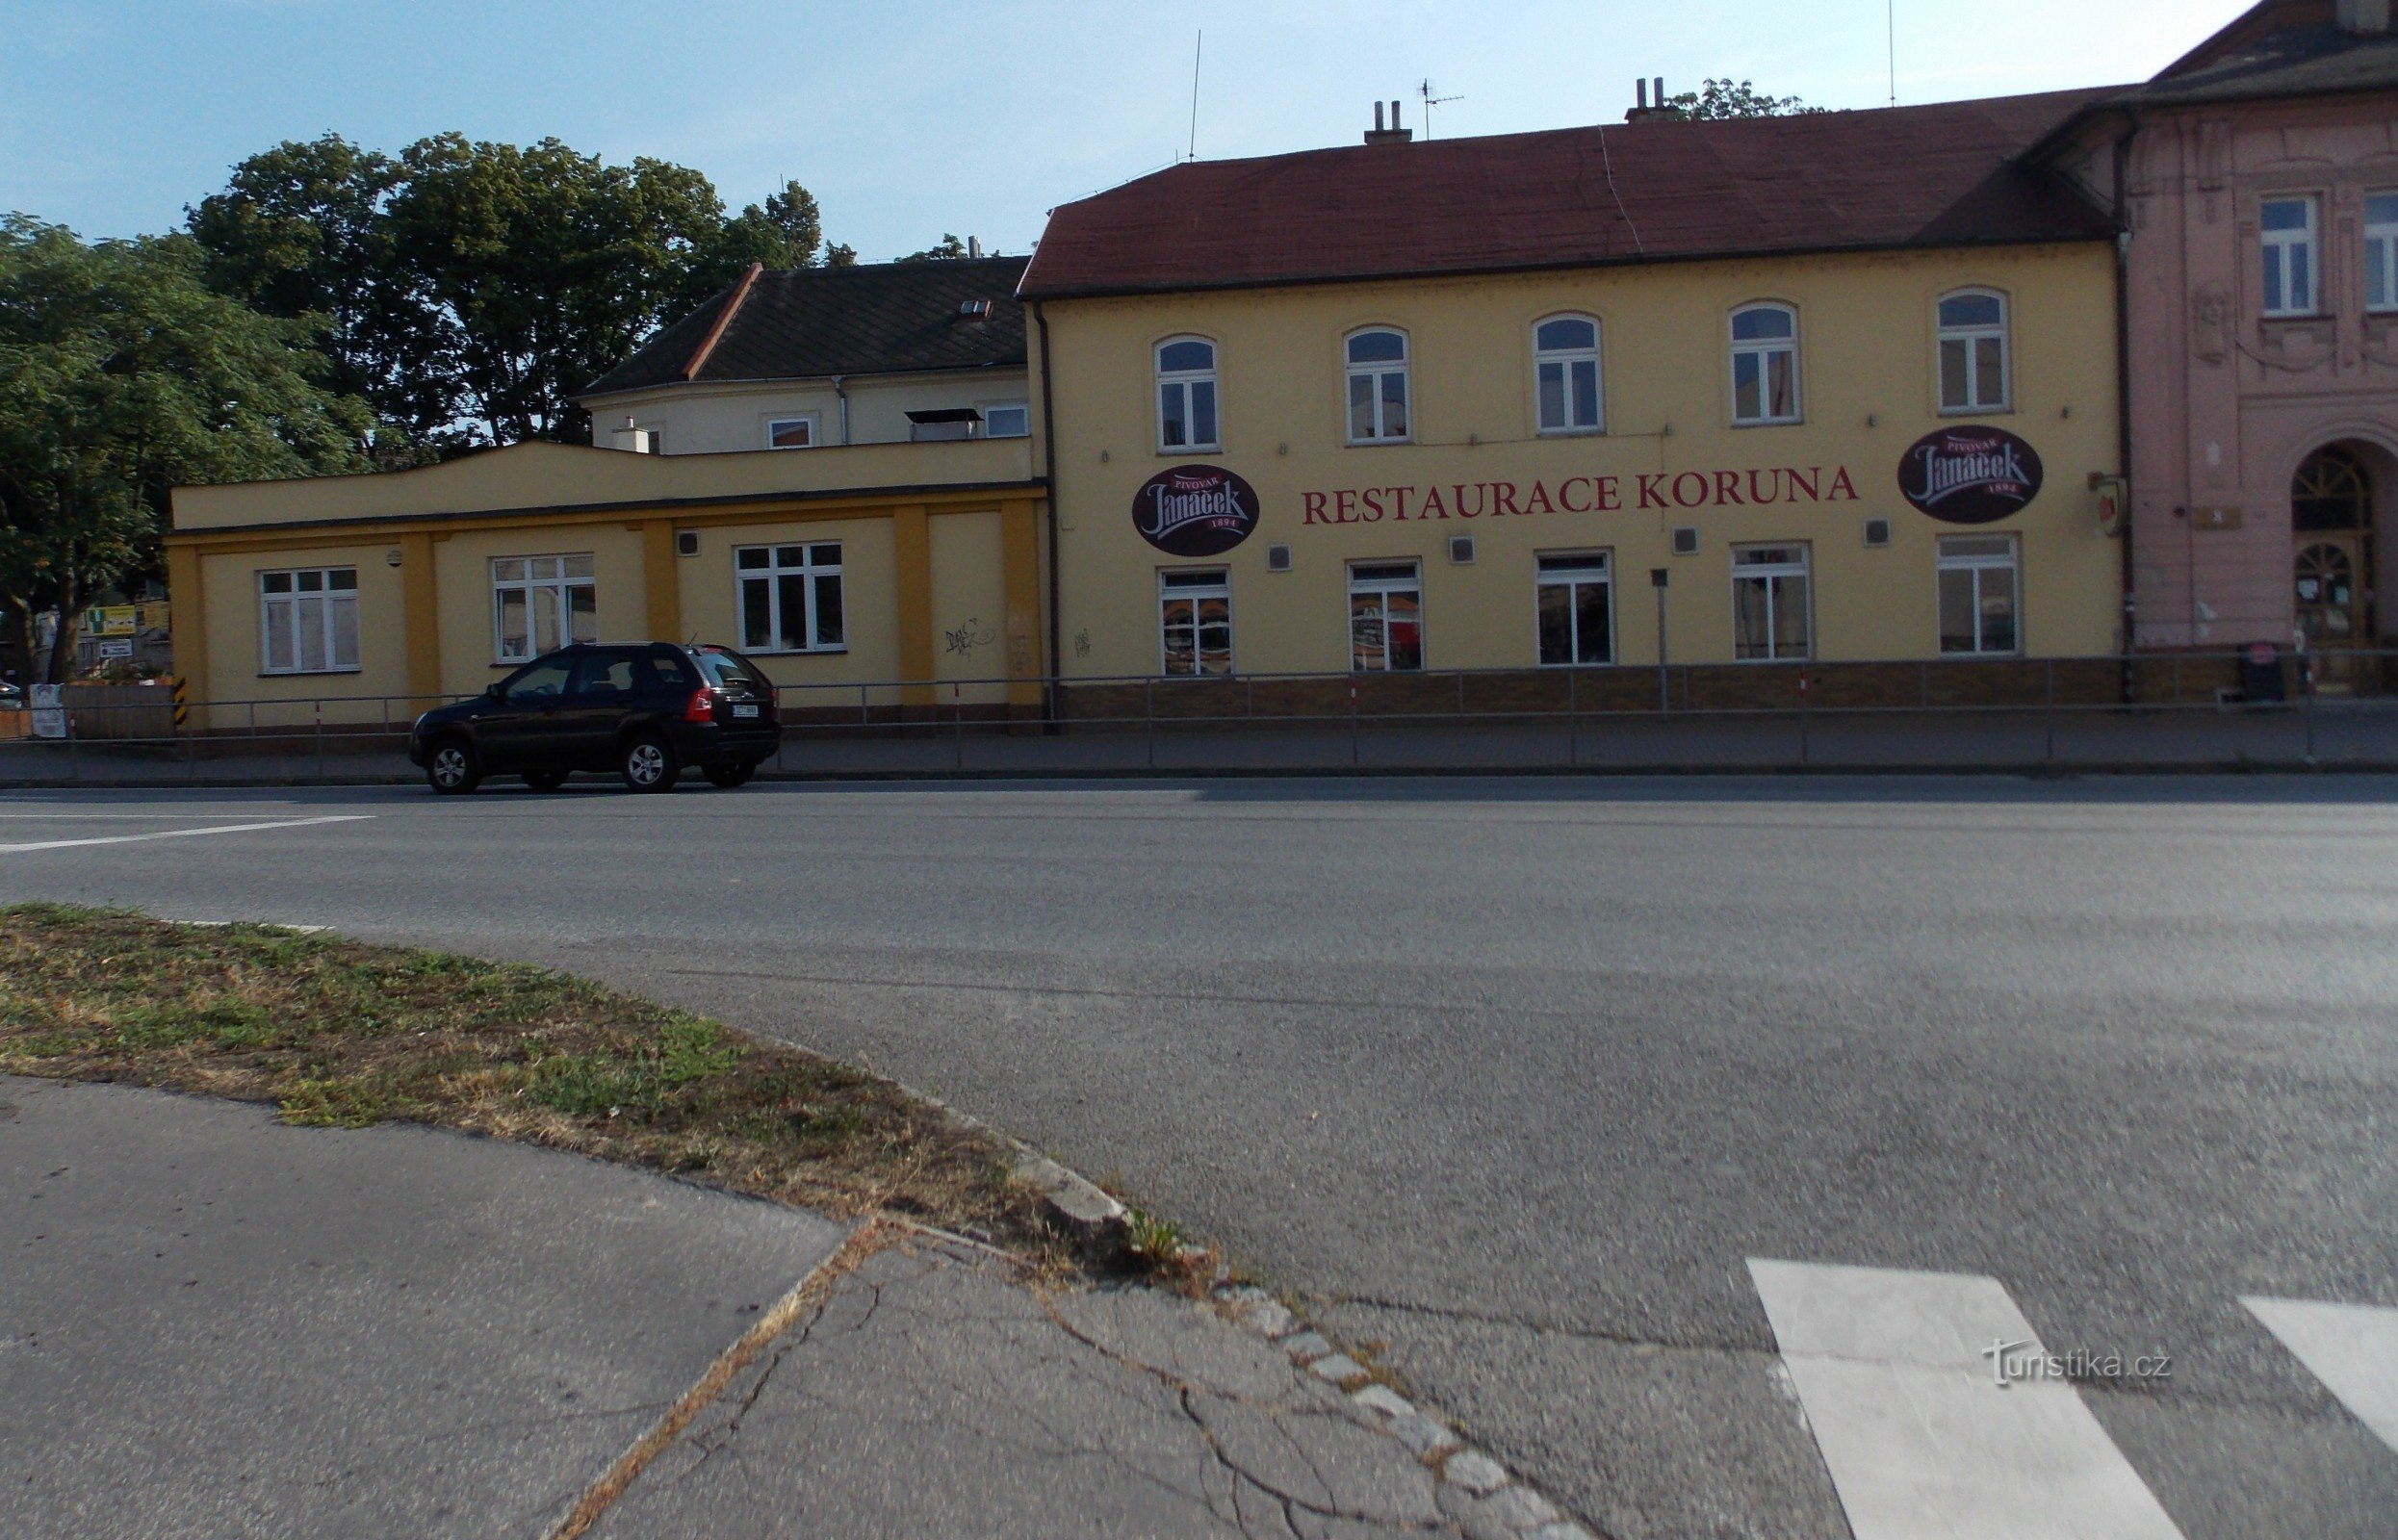 Ресторан Коруна в Угерске Градиште